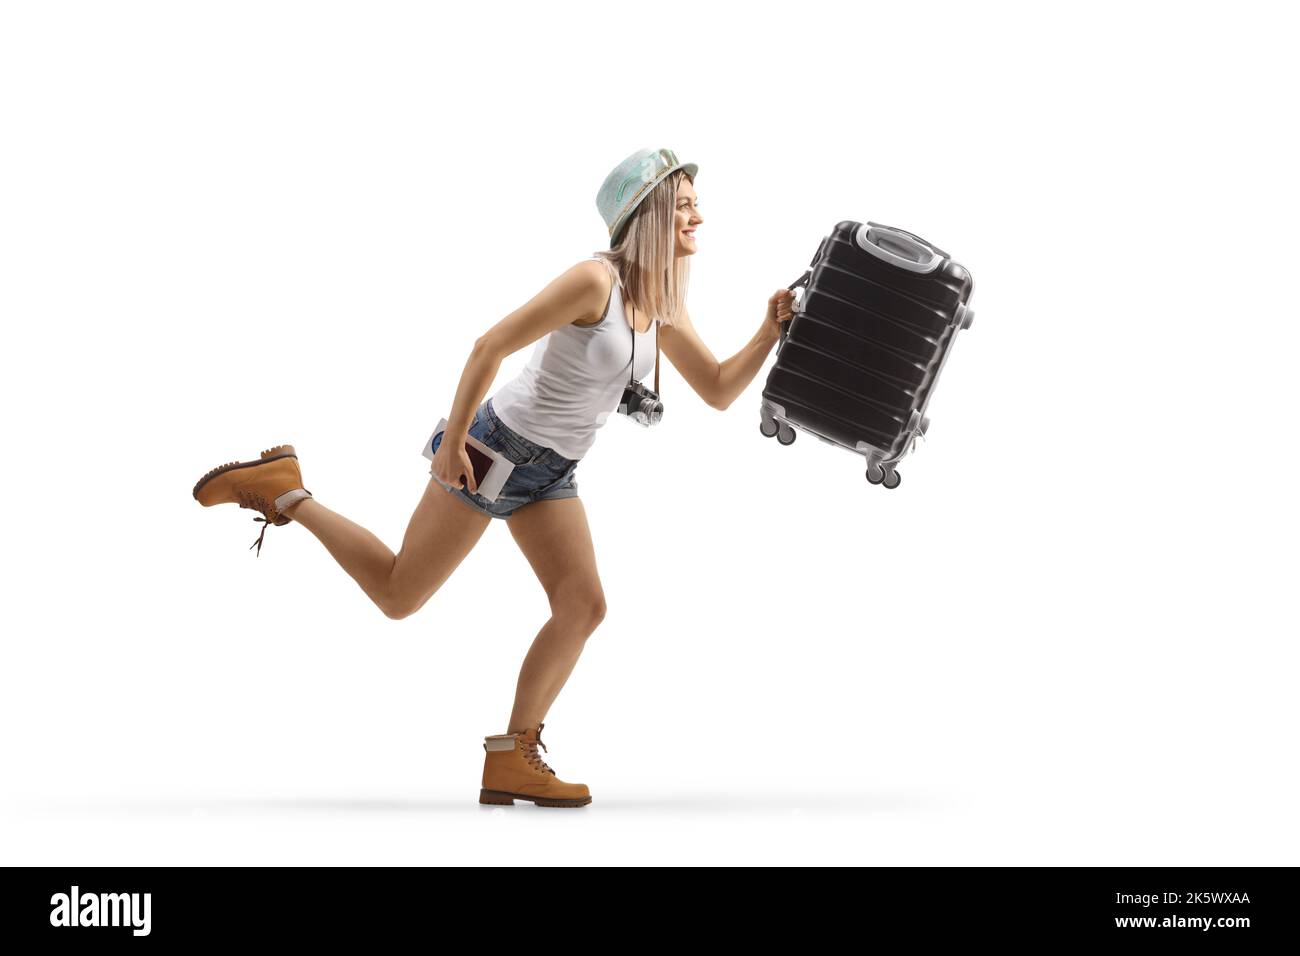 Profilo a tutta lunghezza di una giovane ragazza turista che corre con una valigia isolata su sfondo bianco Foto Stock